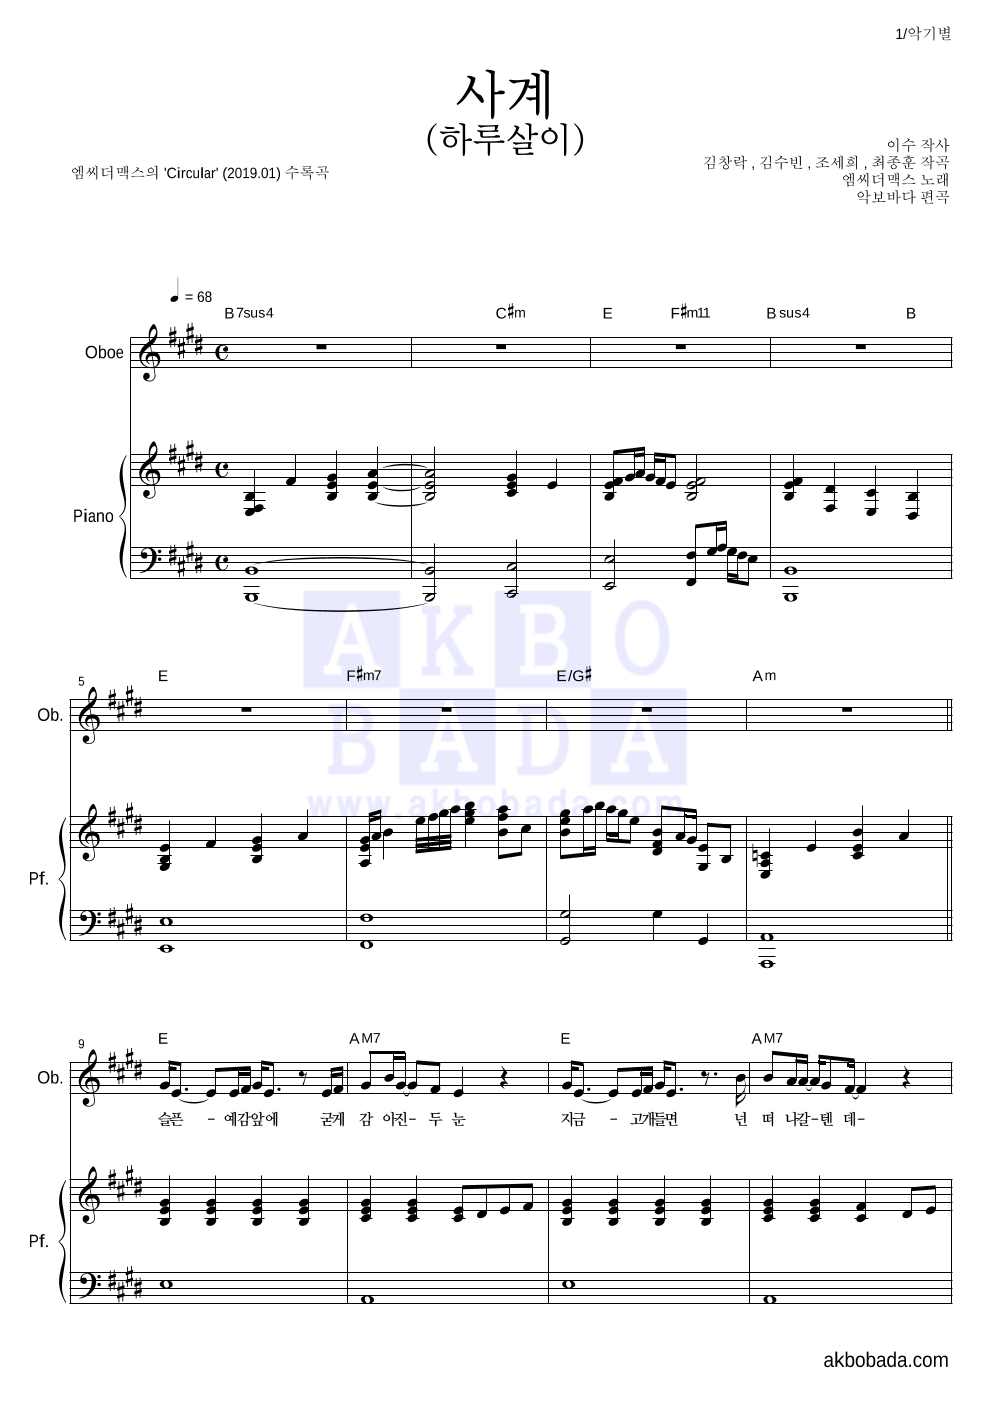 엠씨더맥스 - 사계(하루살이) 오보에&피아노 악보 